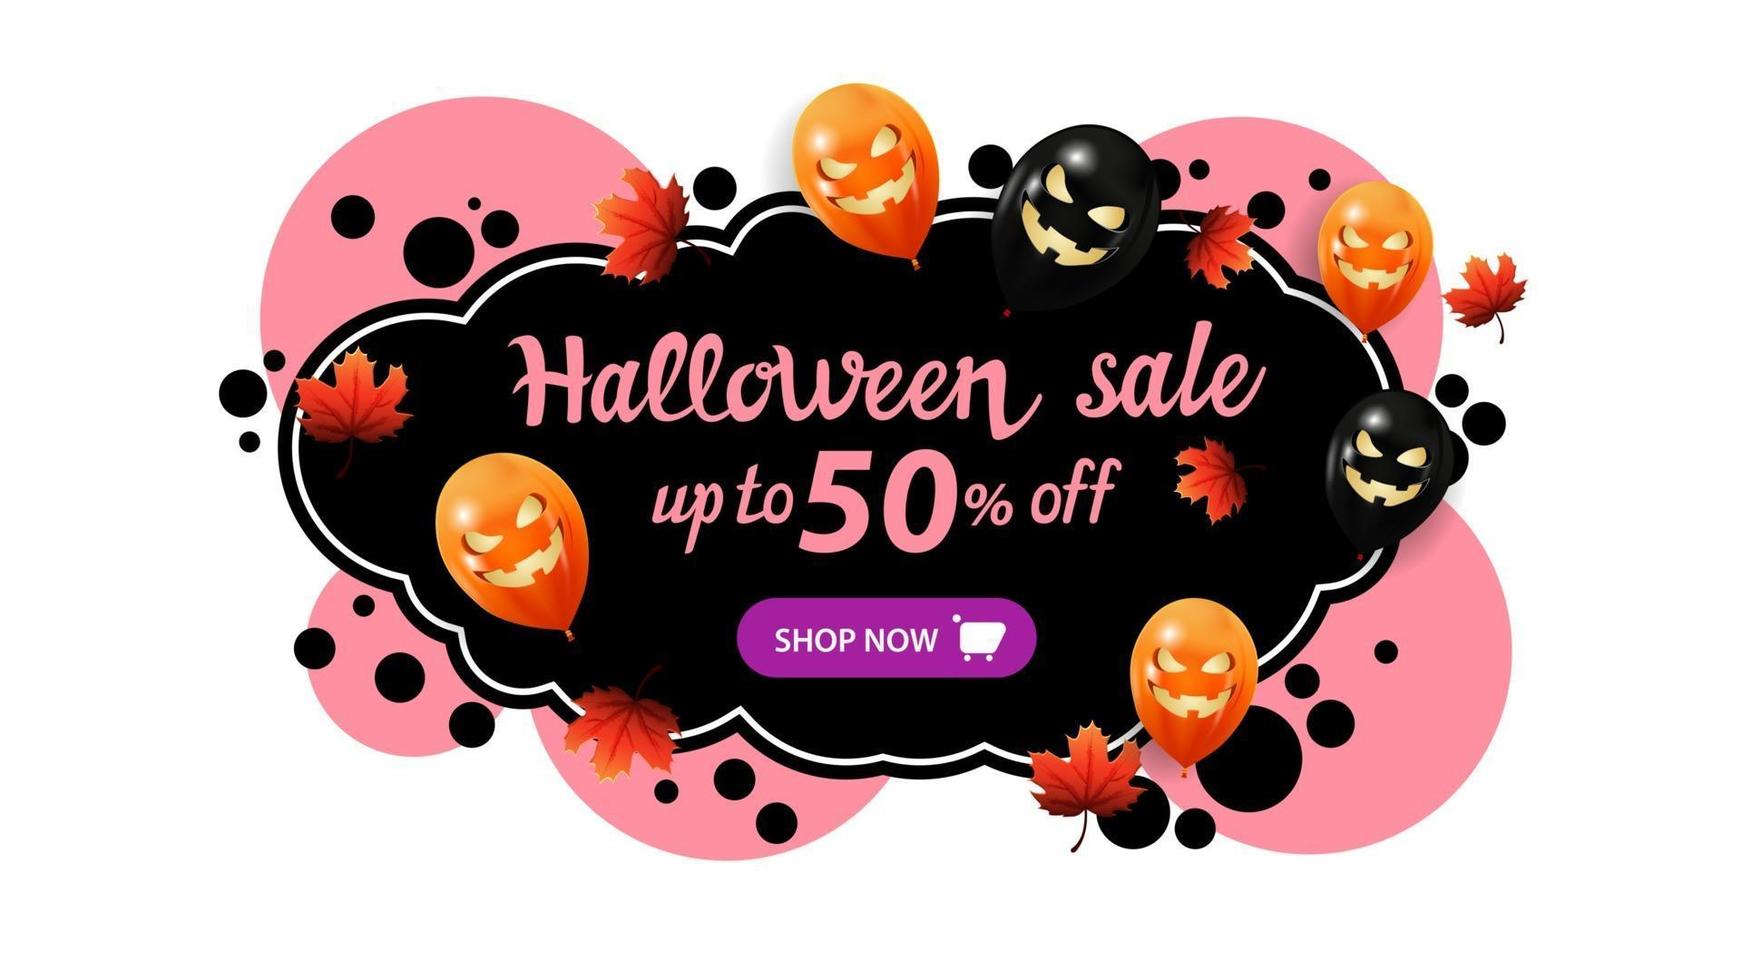 vente d'halloween, jusqu'à 50 de réduction, bannière créative avec style graffiti. modèle avec des bulles, des feuilles d'automne et des ballons d'halloween. vecteur